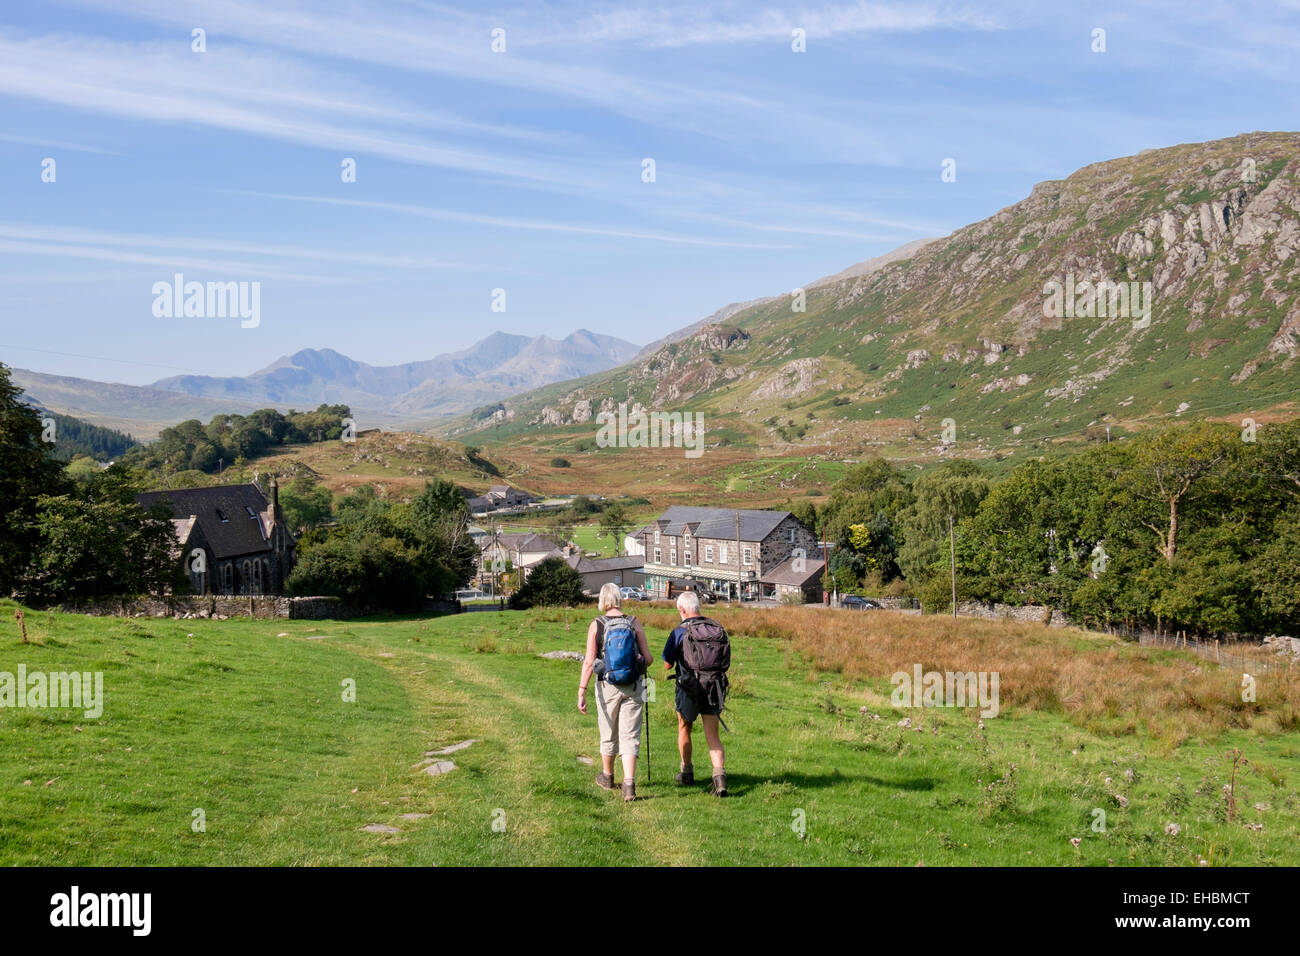 Deux promeneurs marchant sur colline en village avec vue de Snowdon à distance dans le parc national de Snowdonia (Eryri). Capel Curig Conwy Wales Royaume-uni Grande-Bretagne Banque D'Images